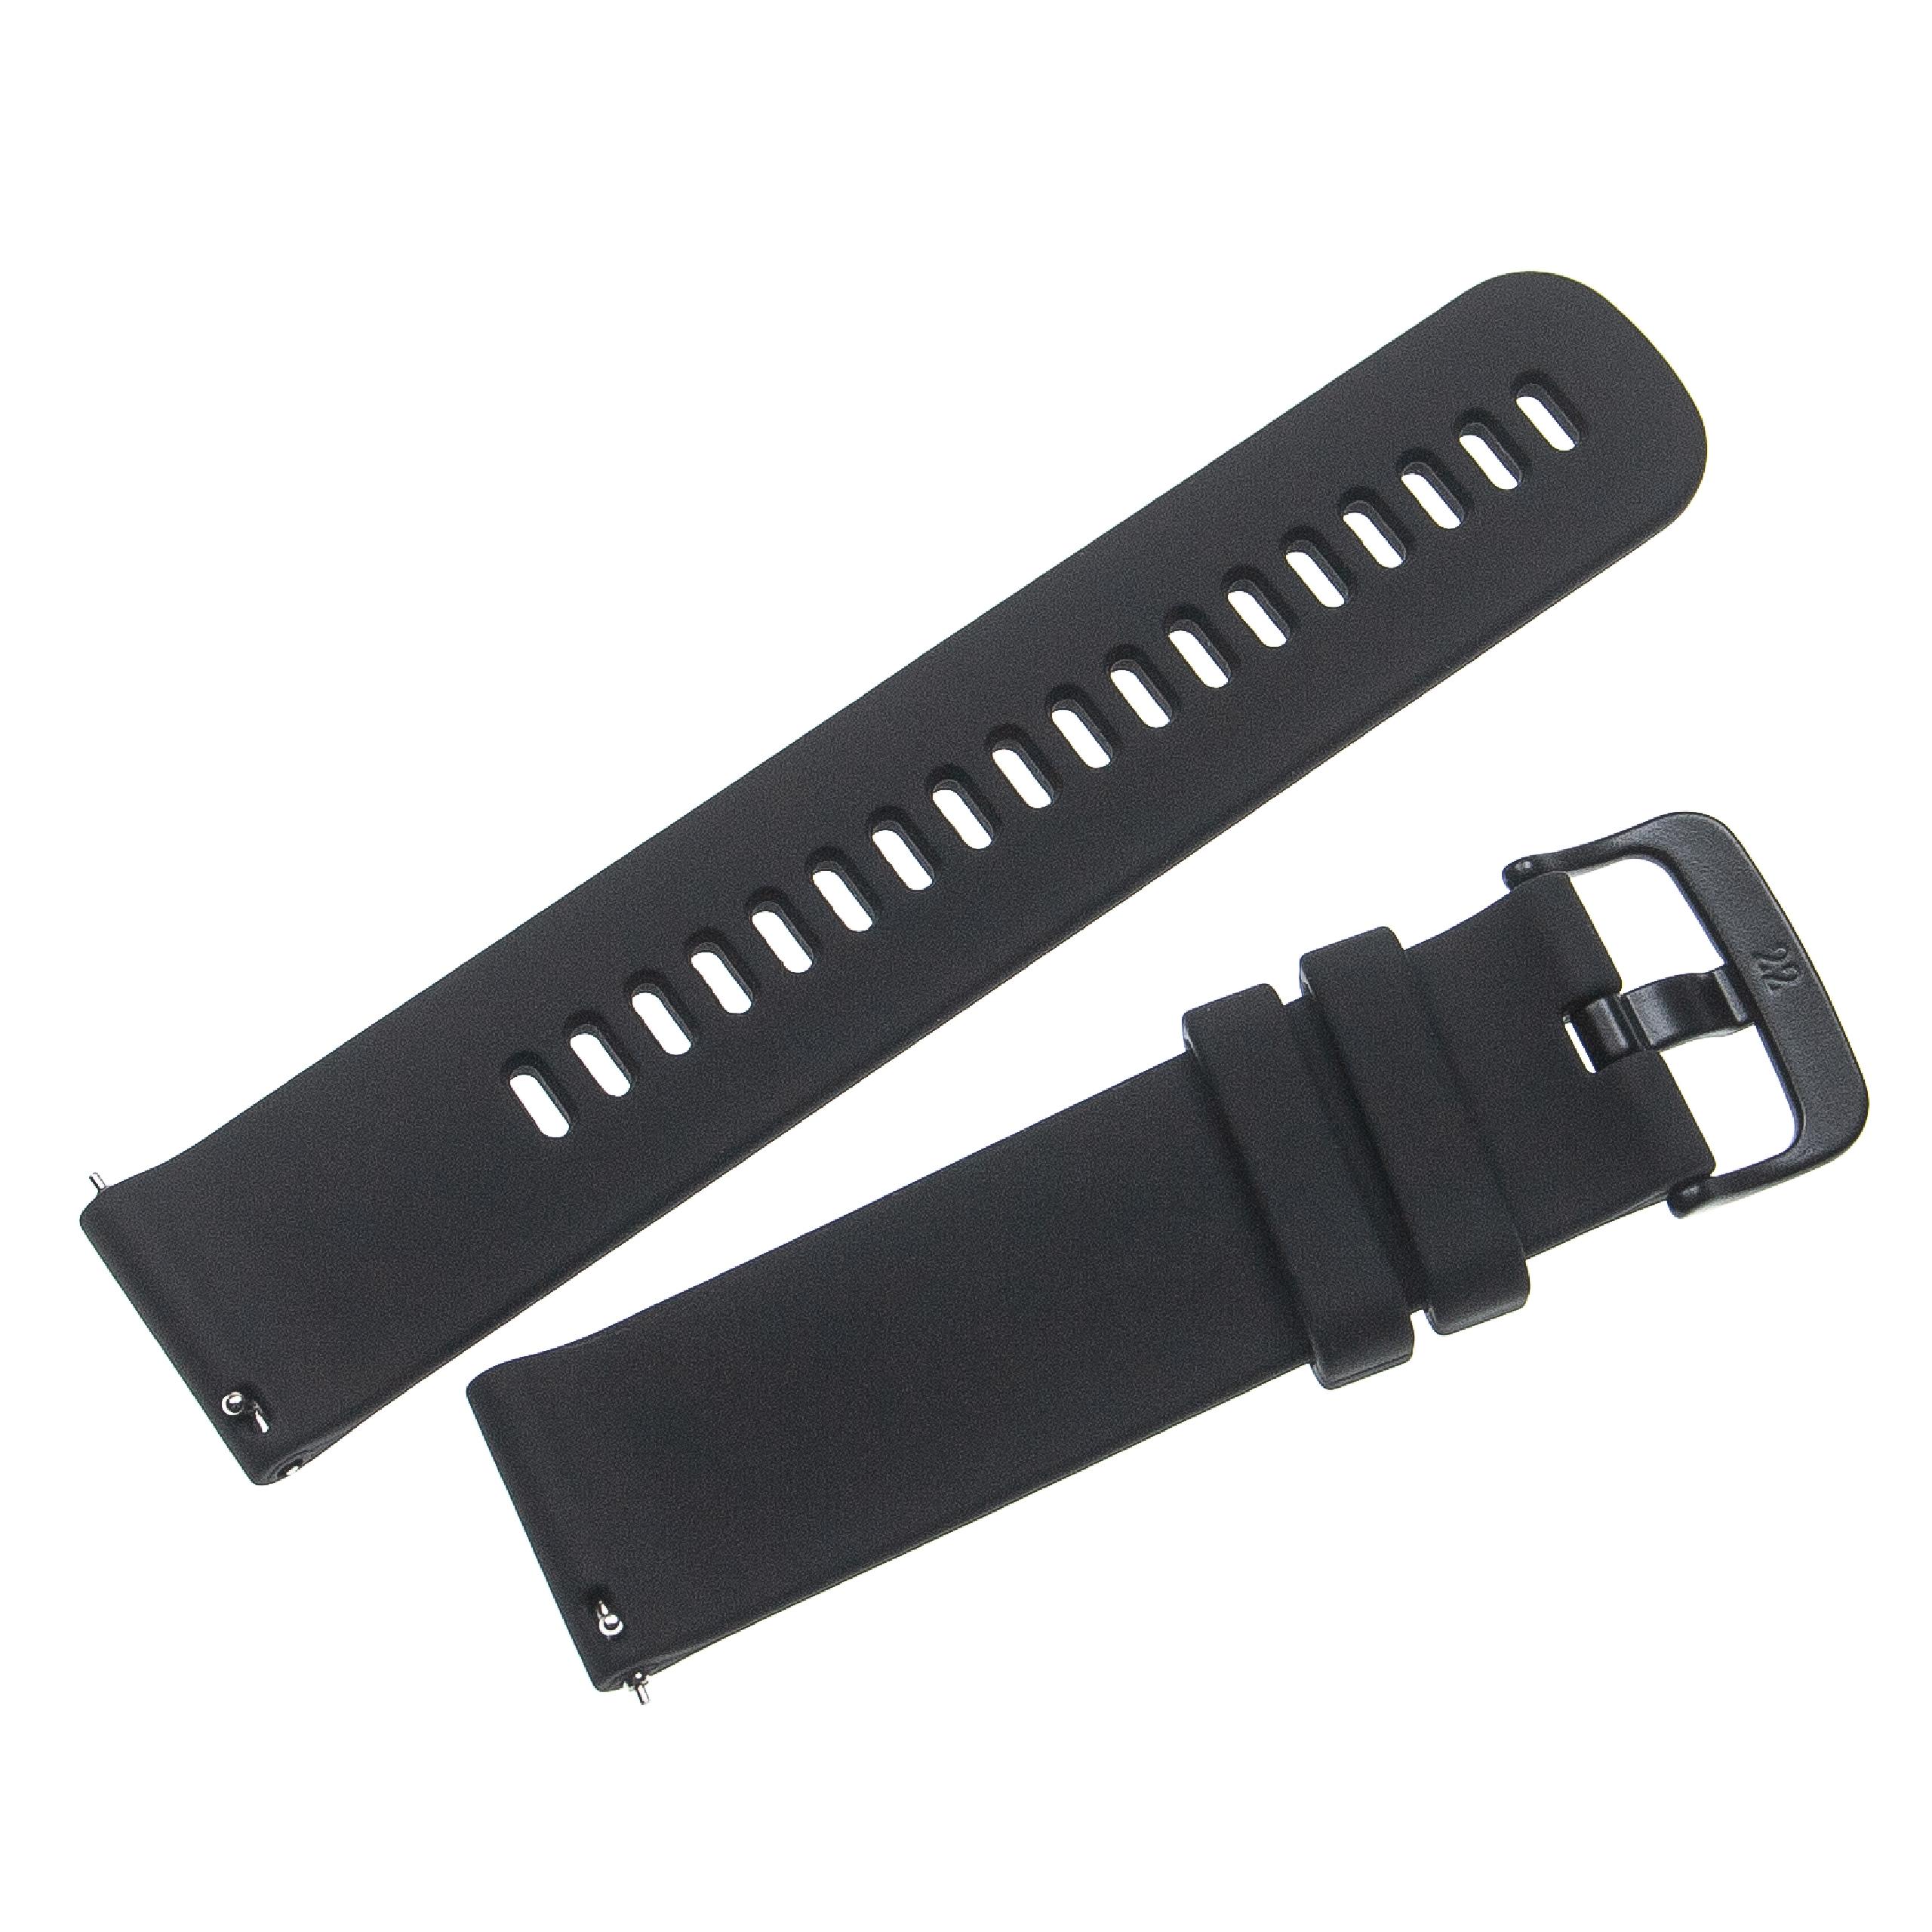 Armband für Garmin Forerunner Smartwatch - 12,1 + 9,2 cm lang, 22mm breit, Silikon, schwarz